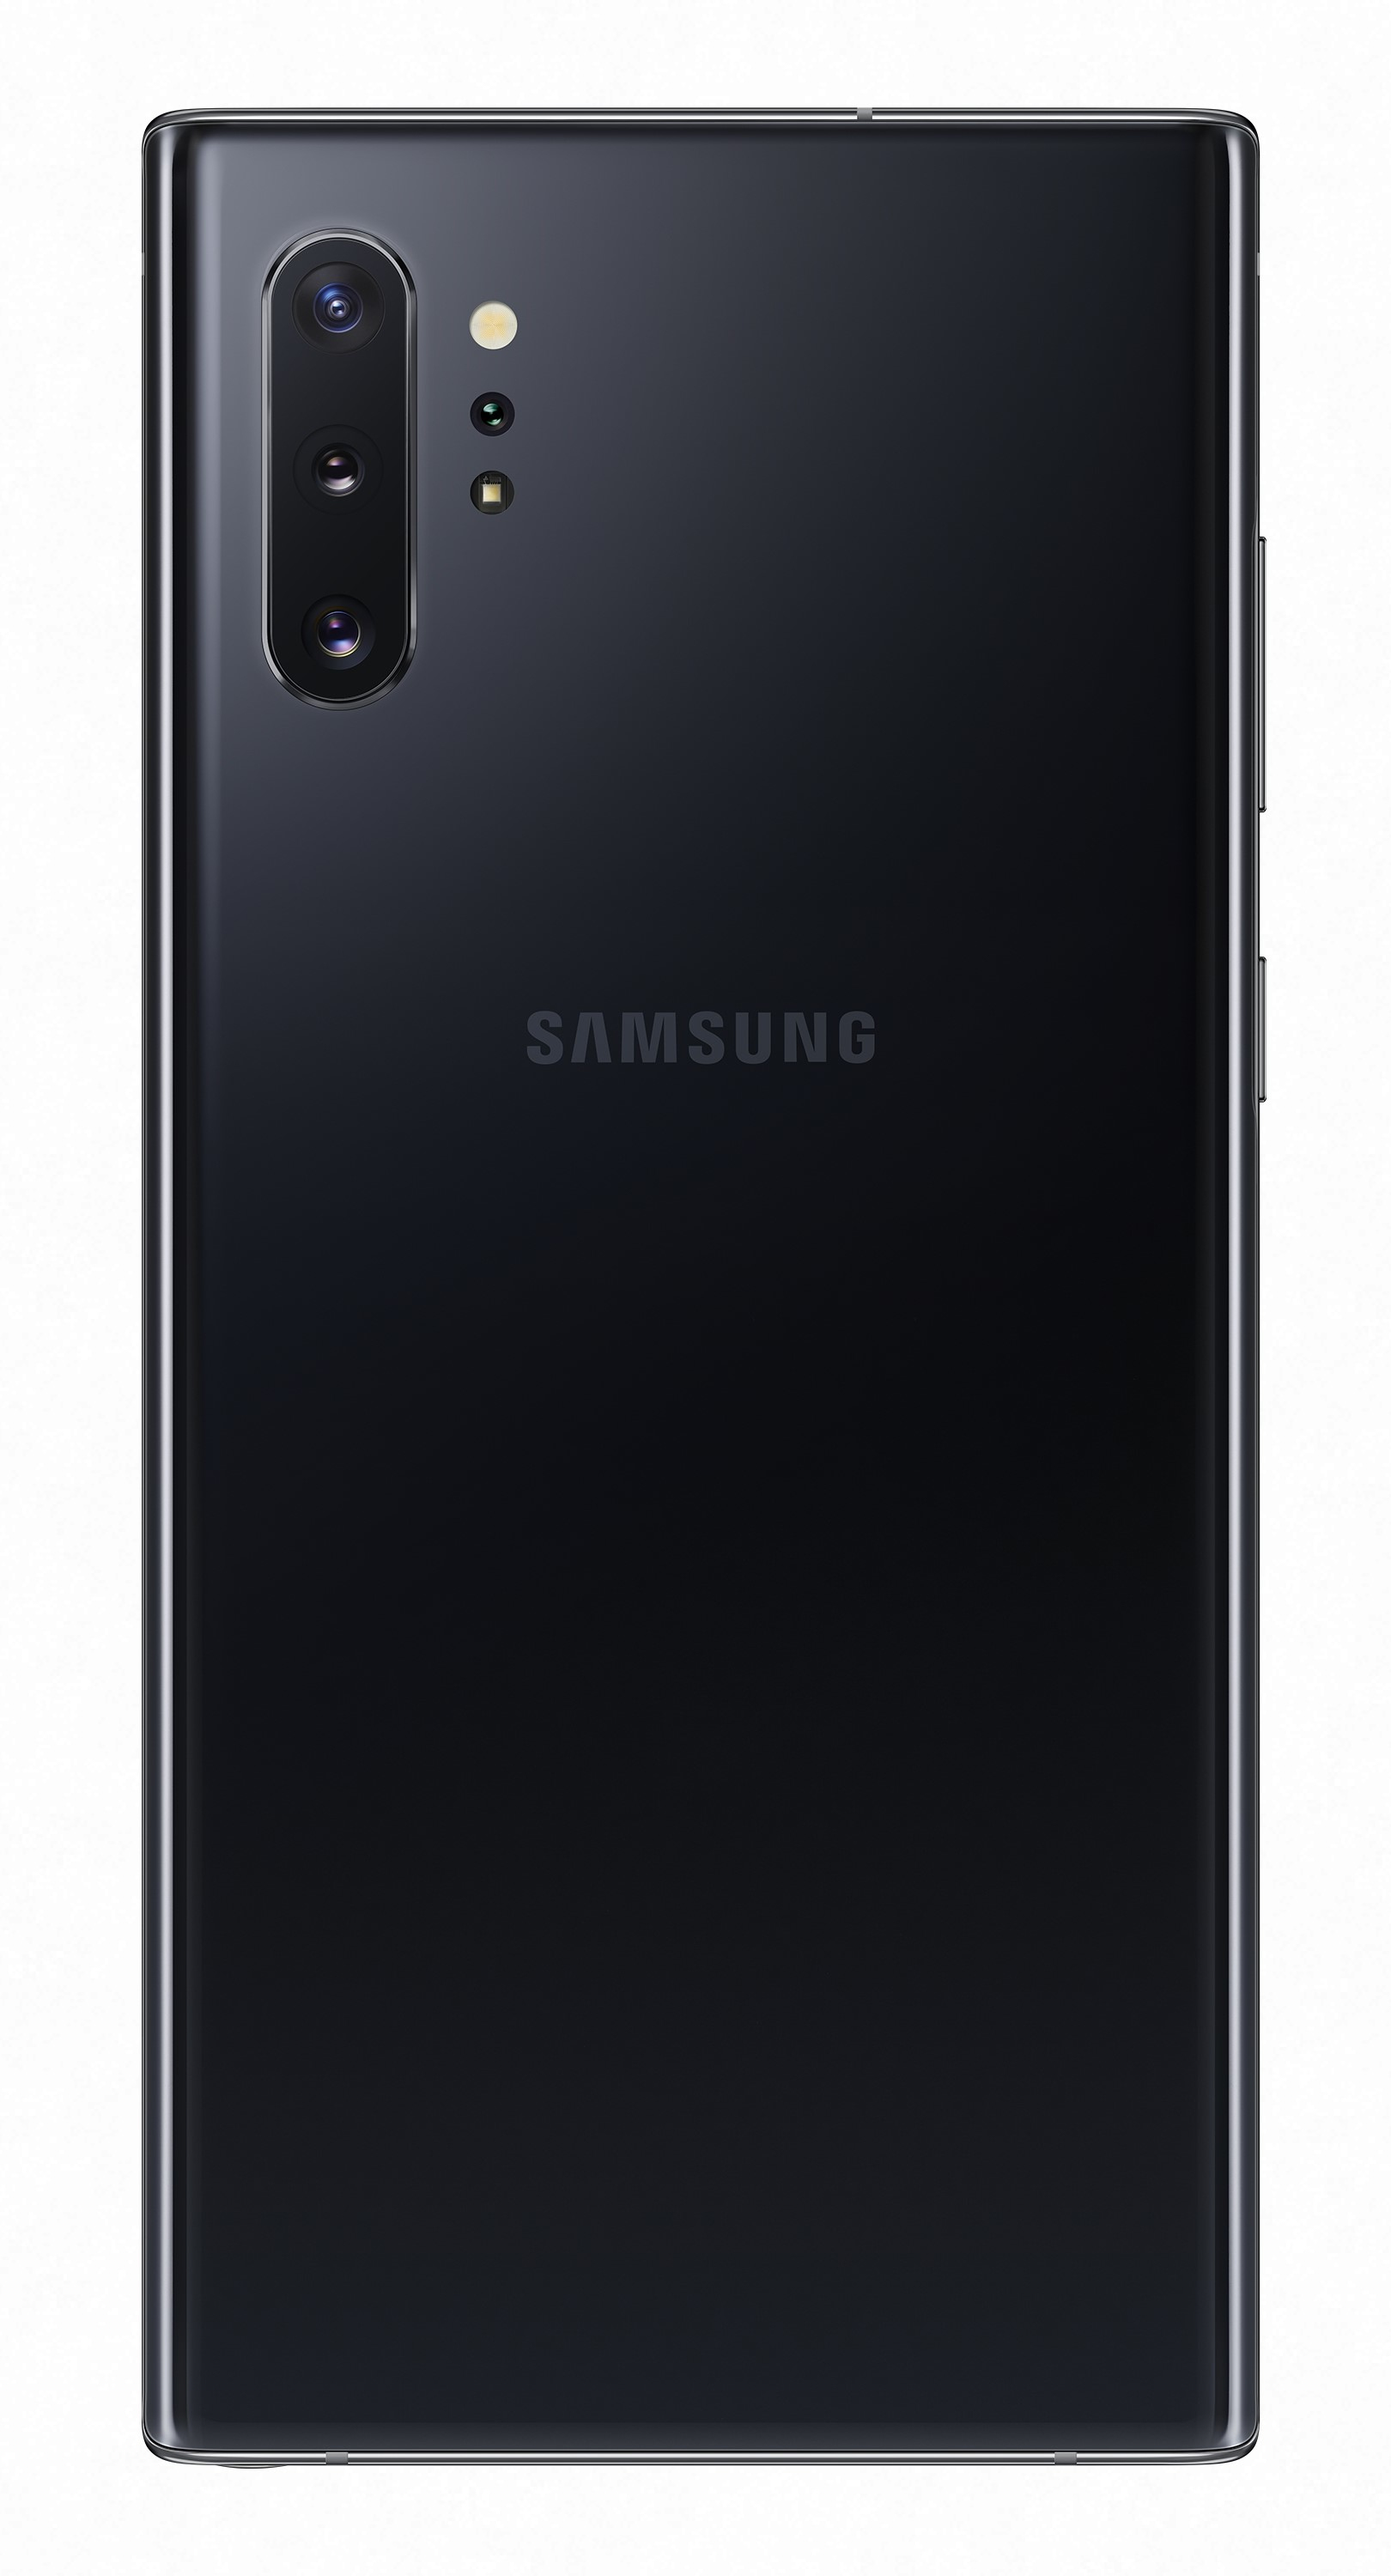 Specs Samsung Galaxy Note10 Sm N975x 17 3 Cm 6 8 Hybrid Dual Sim 4g Usb Type C Black Android 9 0 4300 Mah Smartphones Sm N975xzkaect